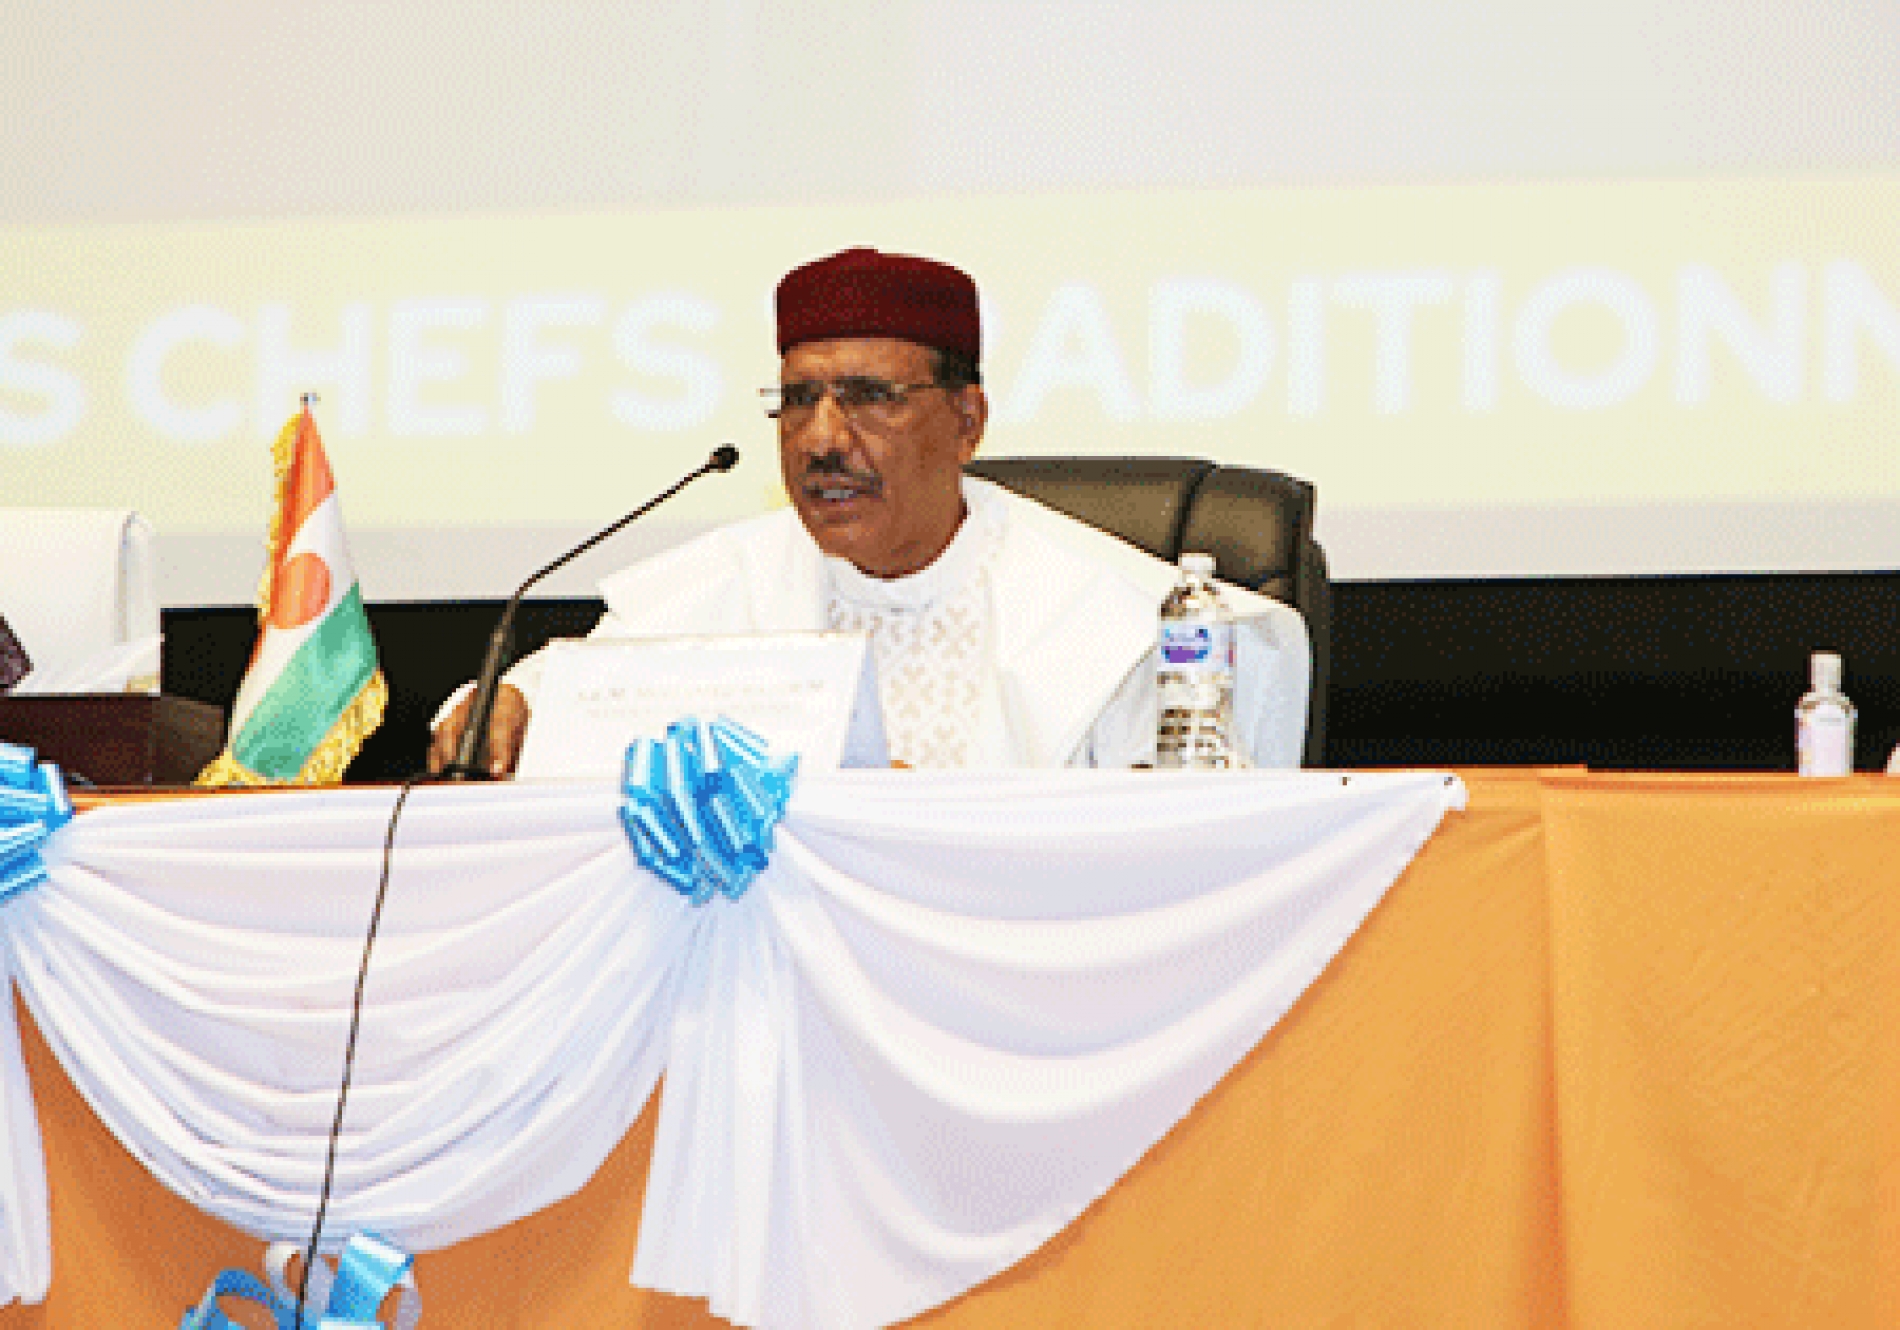 Discours prononcé par le Président Mohamed Bazoum à l’ouverture du symposium pour la mobilisation des leaders traditionnels autour de la transition démographique au Niger